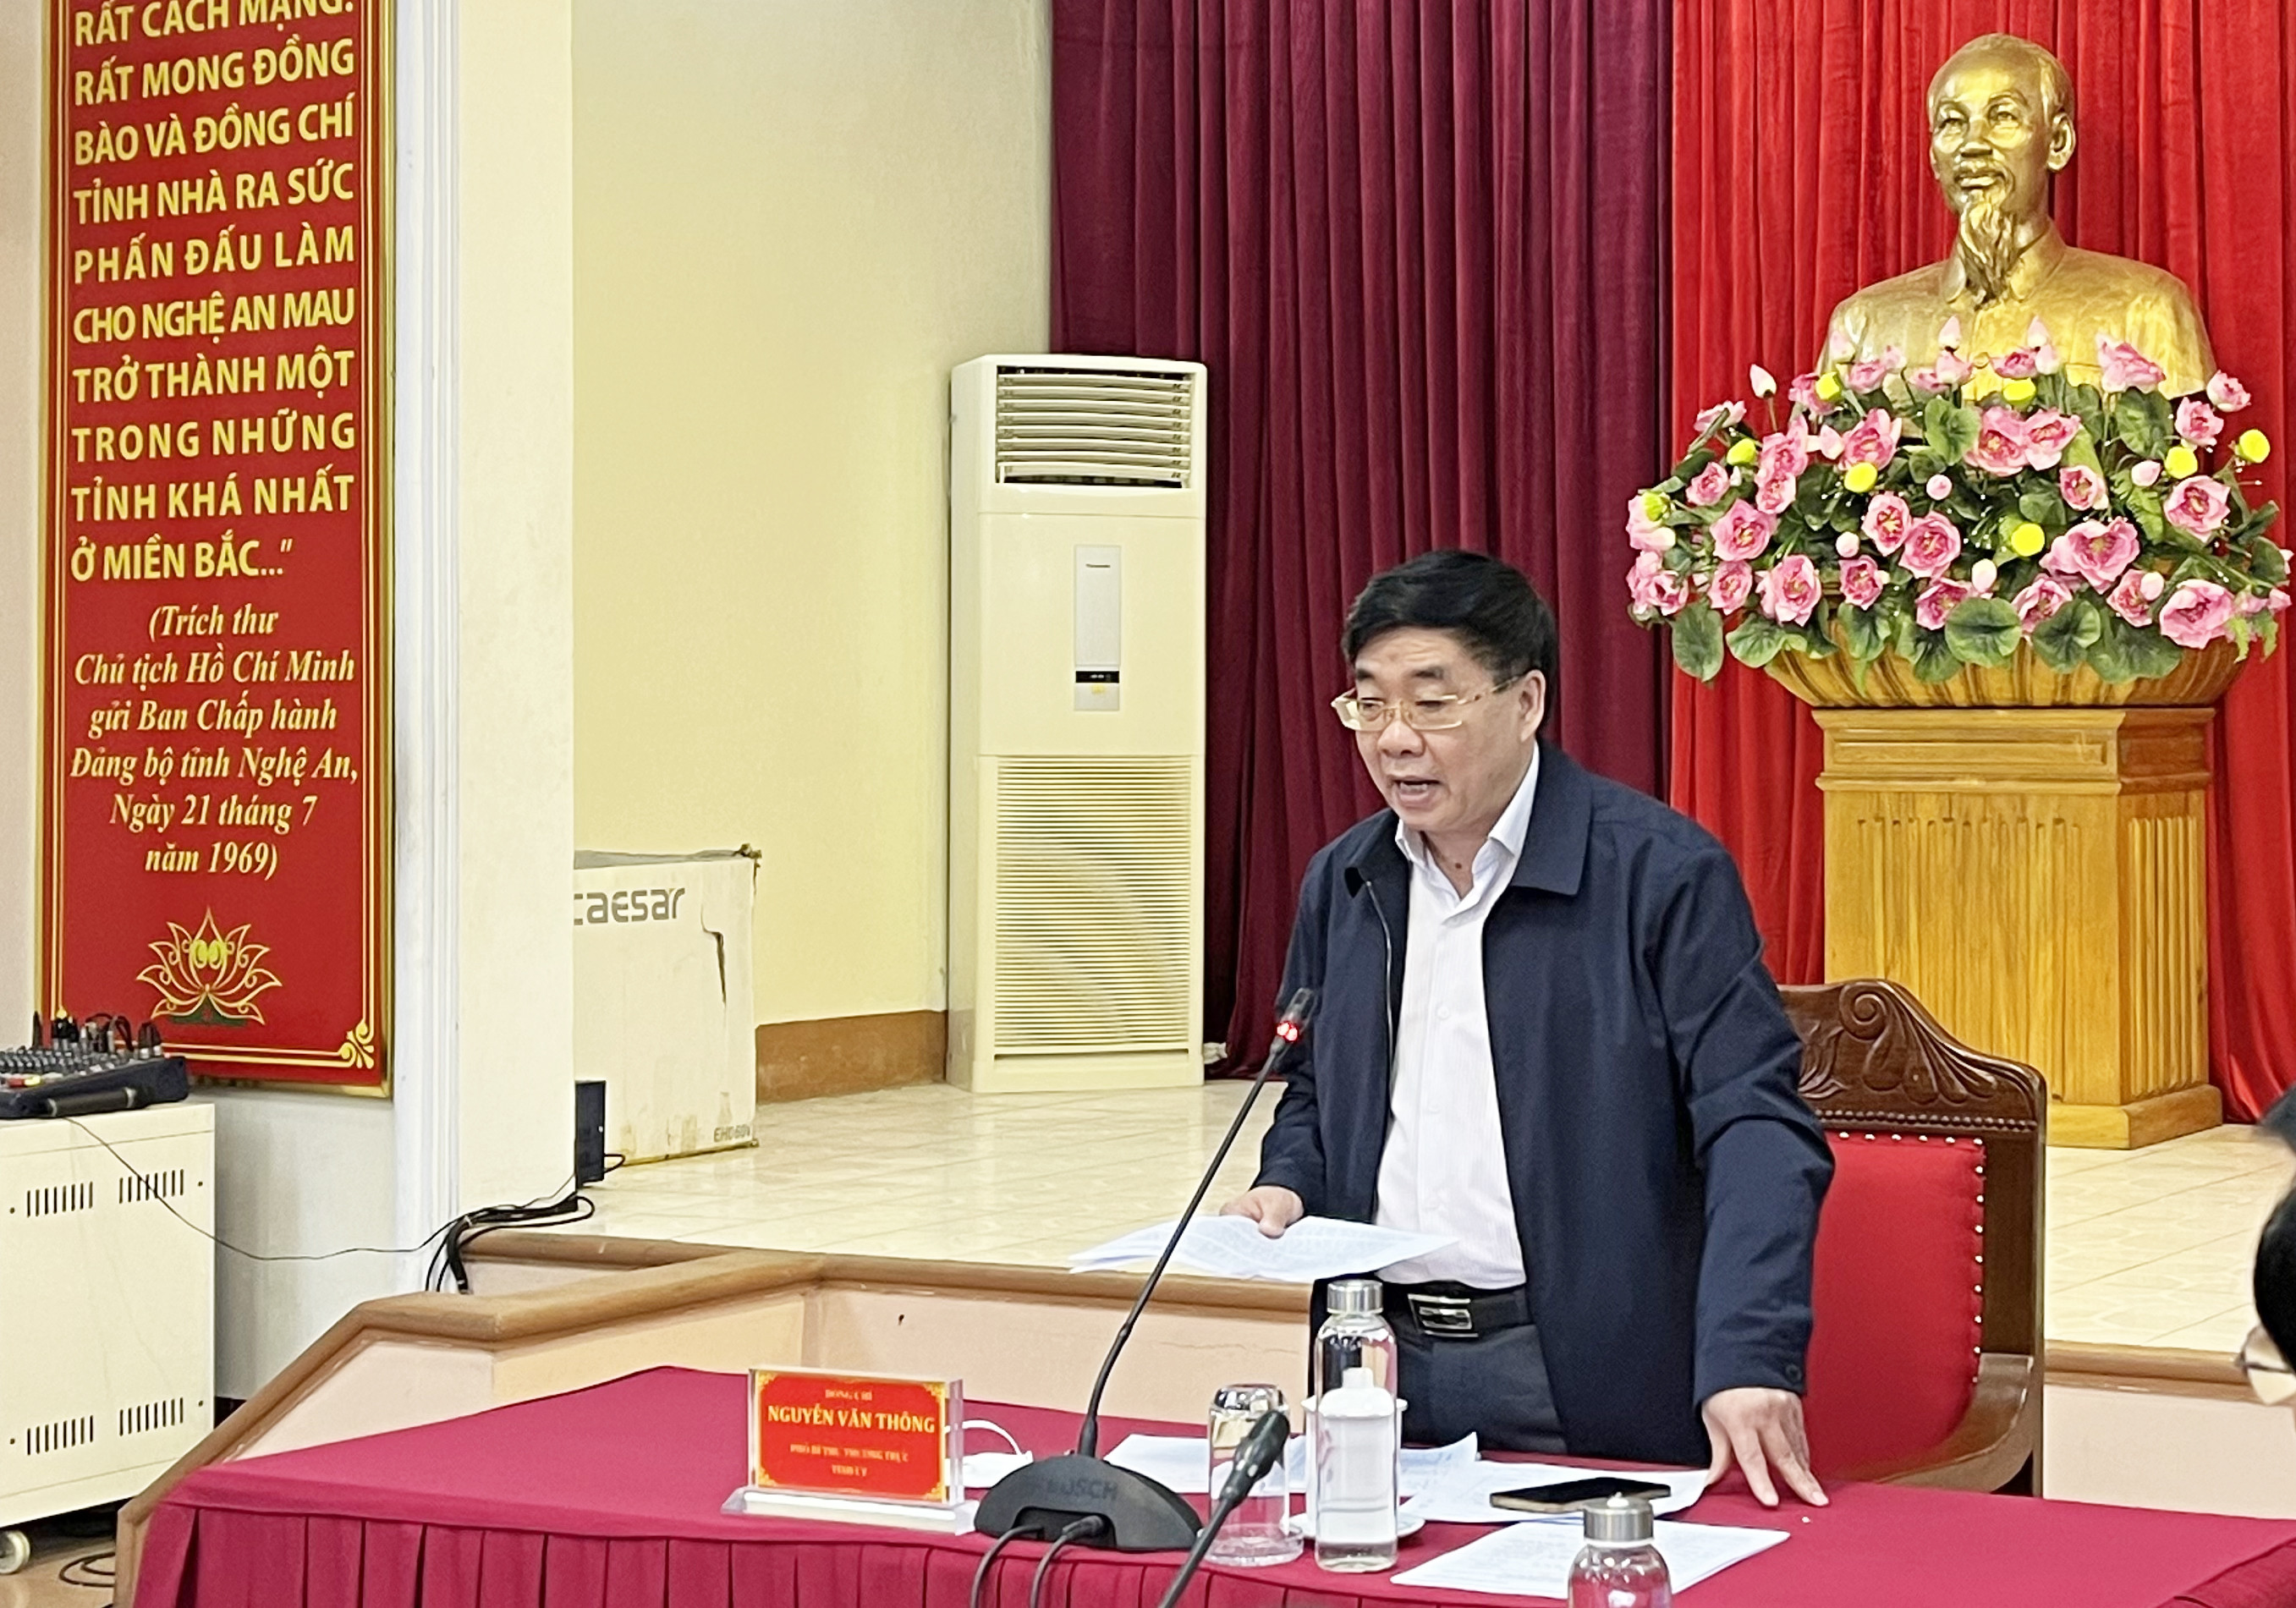 Đồng chí Nguyễn Văn Thông - Phó Bí thư Thường trực Tỉnh ủy phát biểu kết luận hội nghị. Ảnh: TG